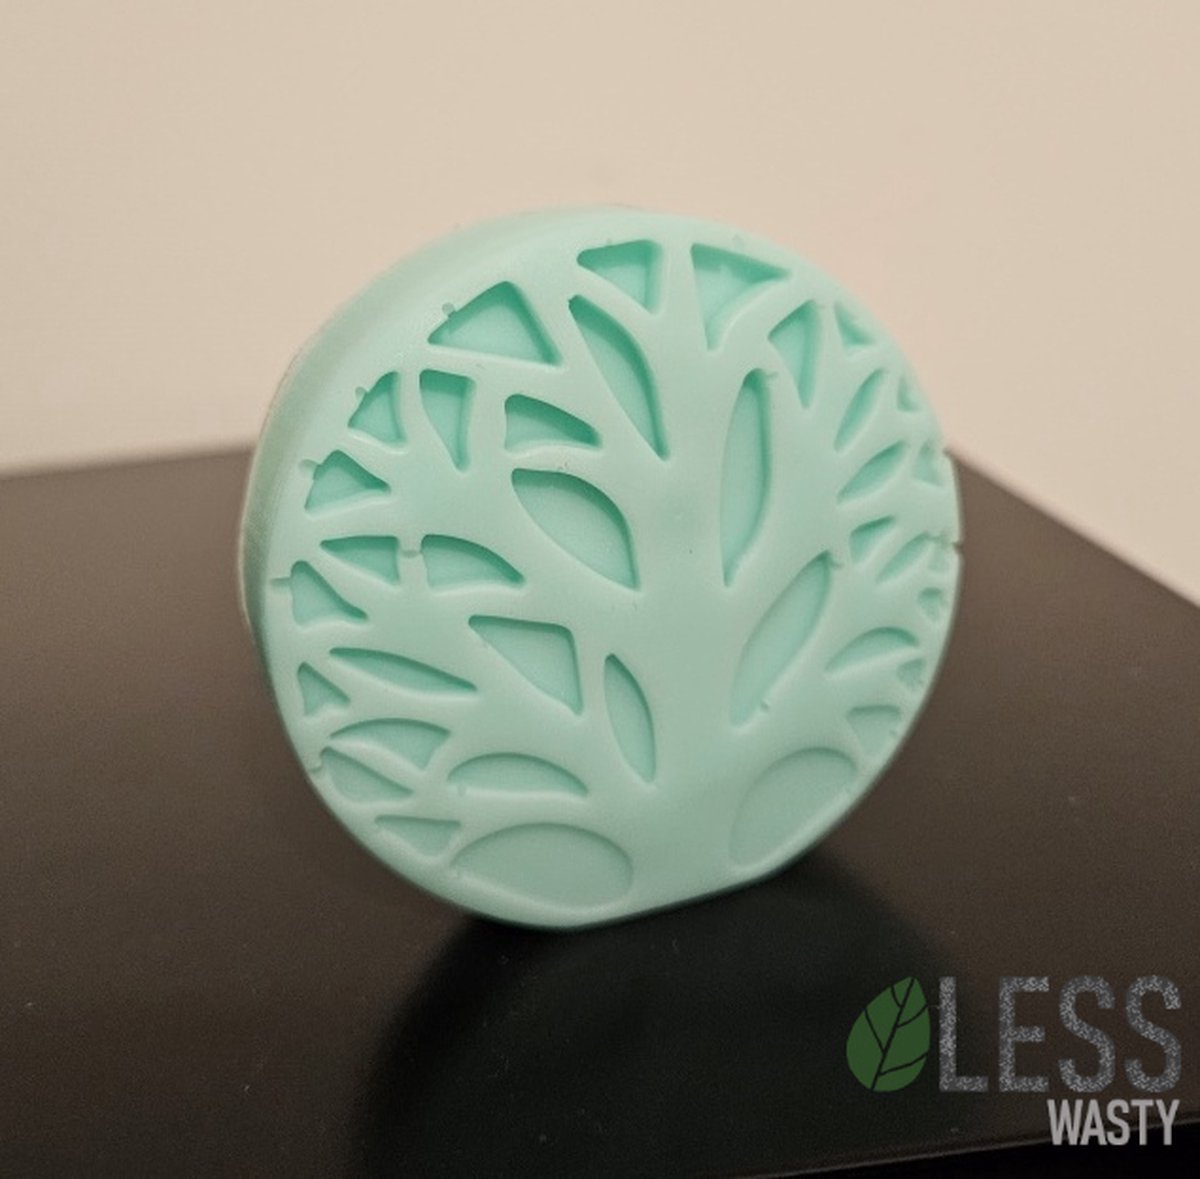 LessWasty - shampoo bar - 70 gr - geen plastic - 100% natuurlijk - betere keus voor milieu - duurzaam